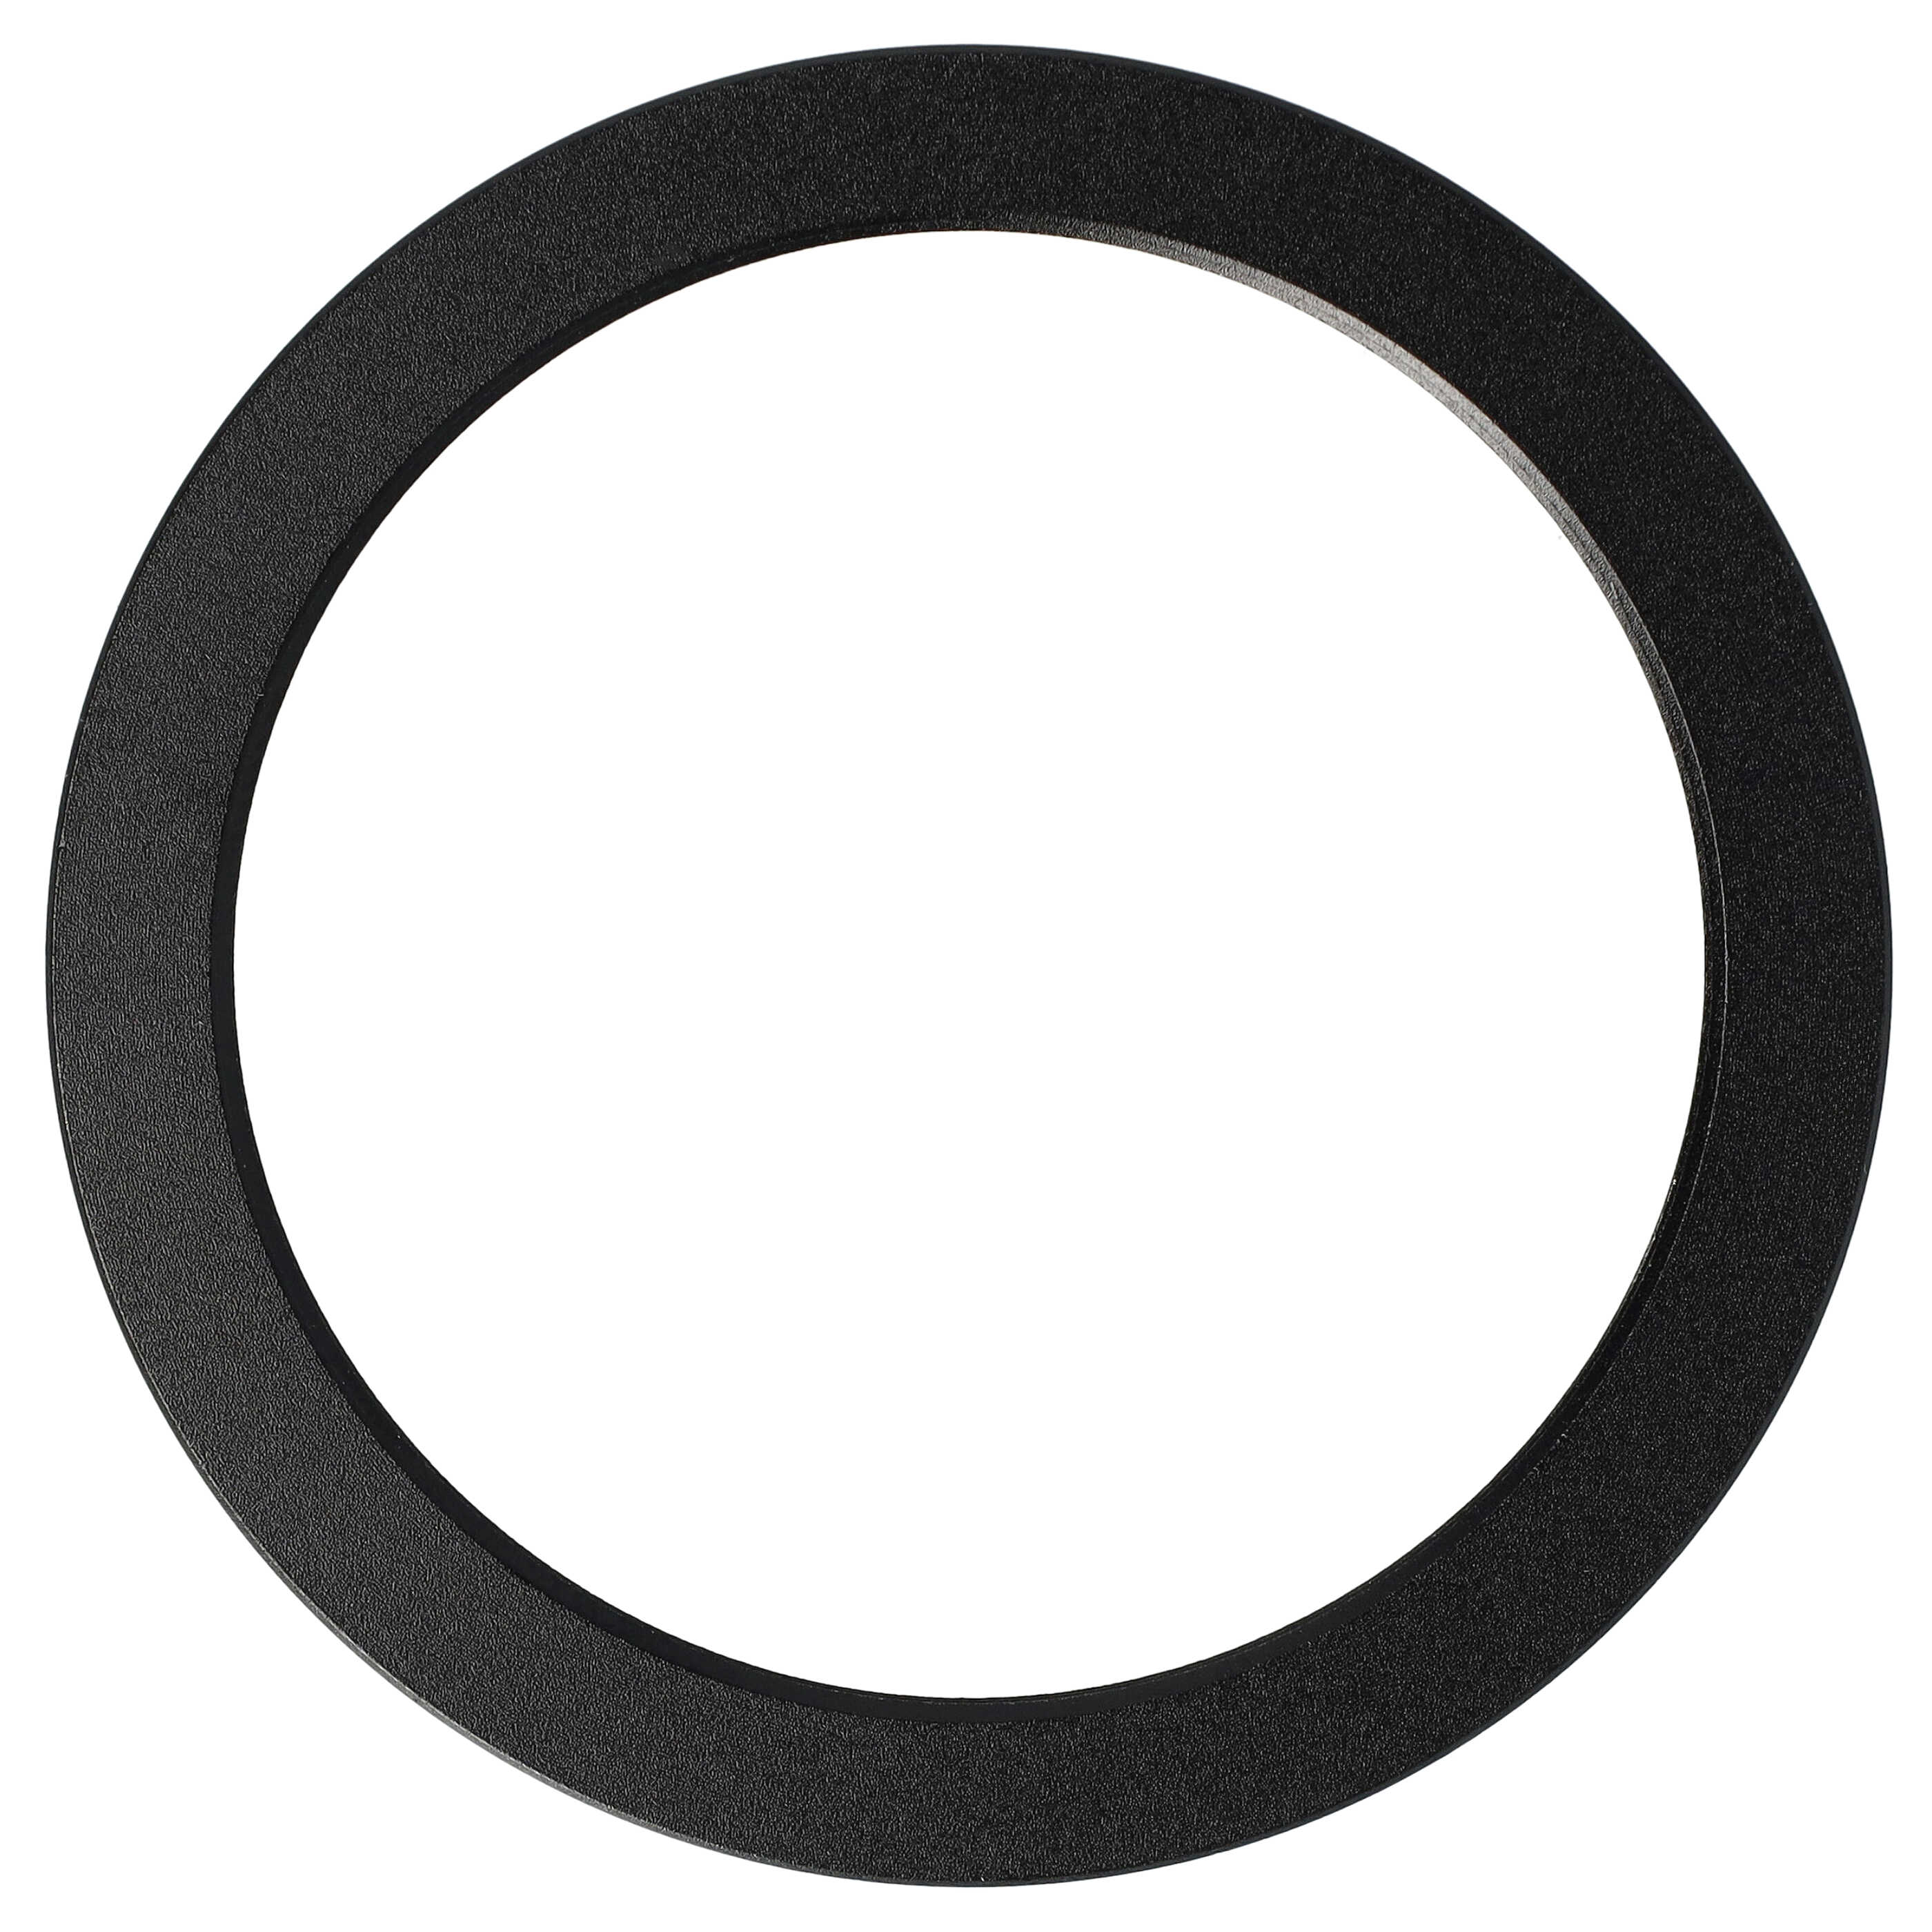 Anello adattatore step-down da 62 mm a 52 mm per obiettivo fotocamera - Adattatore filtro, metallo, nero